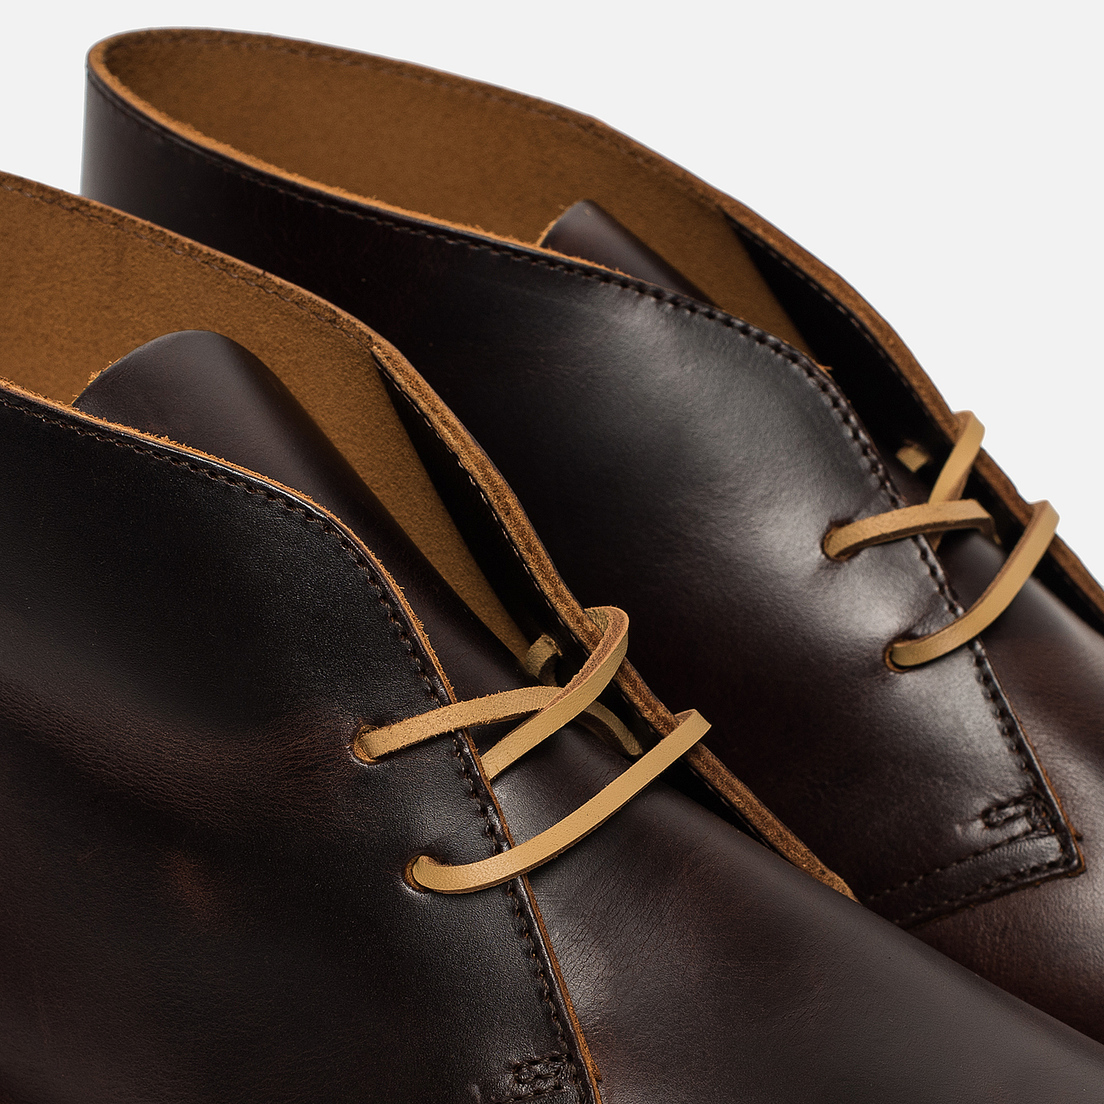 Clarks Originals Мужские ботинки Desert Boot Leather